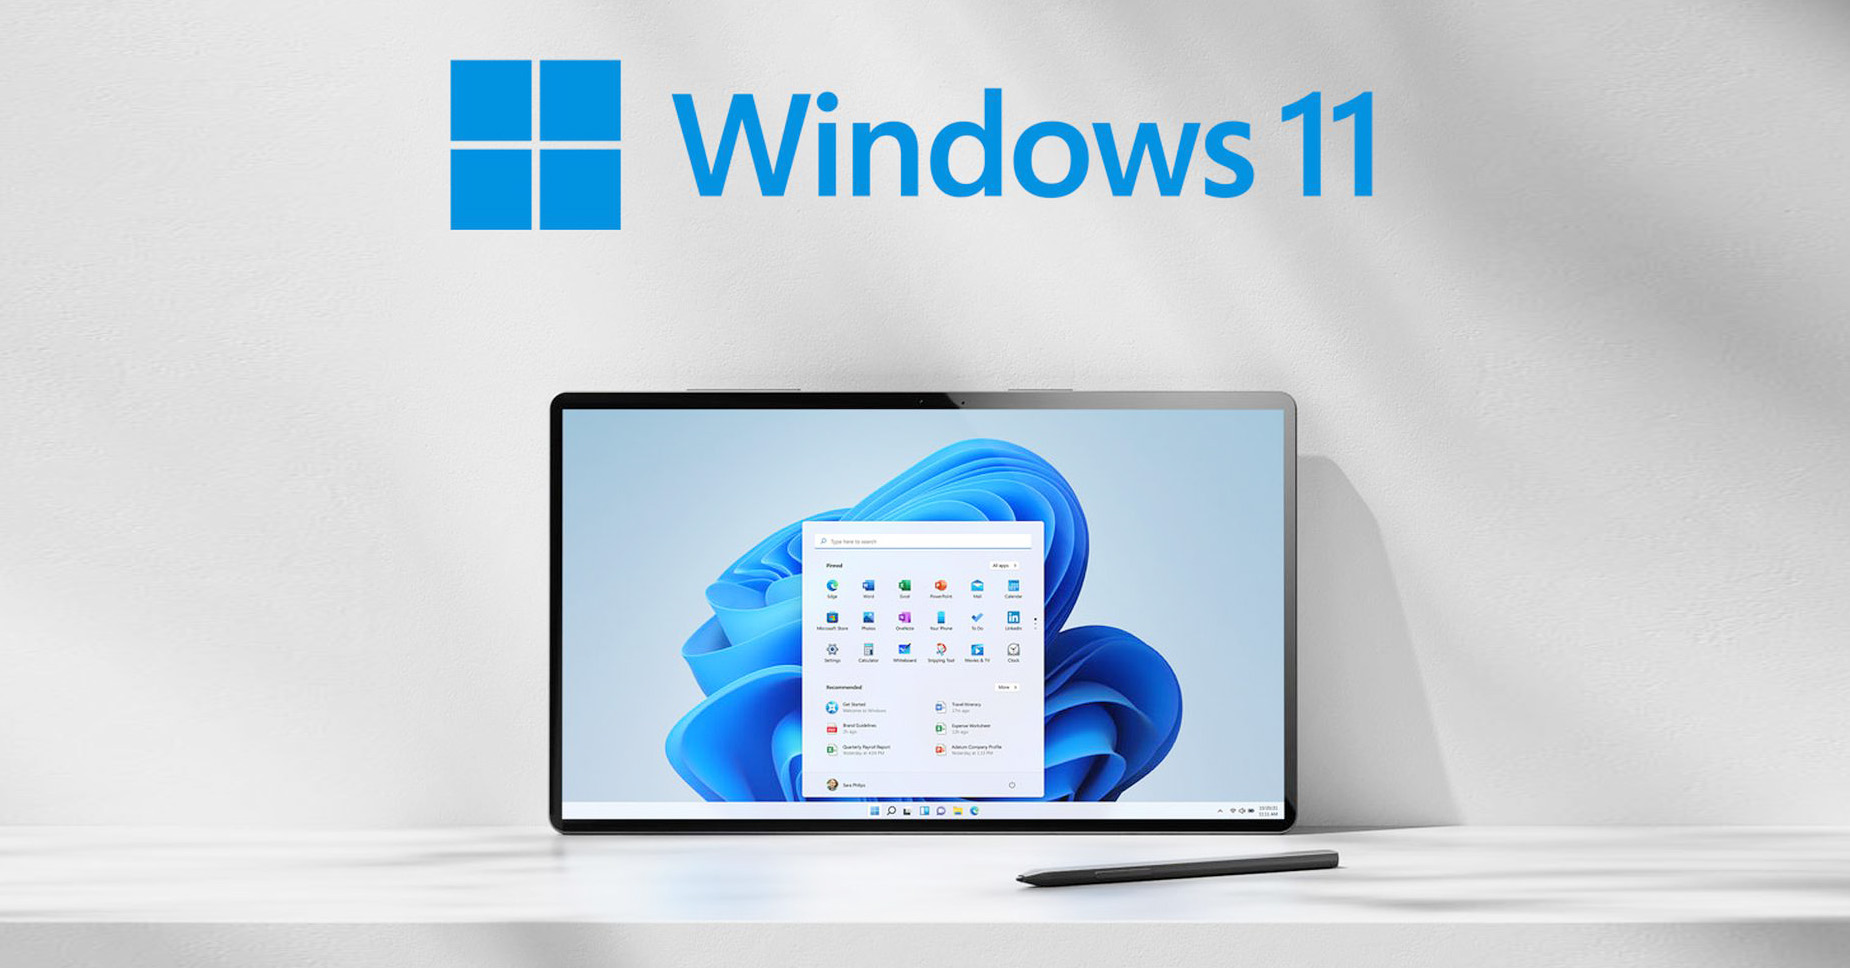 Hướng dẫn cập nhật lên Windows 11 miễn phí, cách ép máy lên Windows 11 ngay  hôm nay | Tinh tế